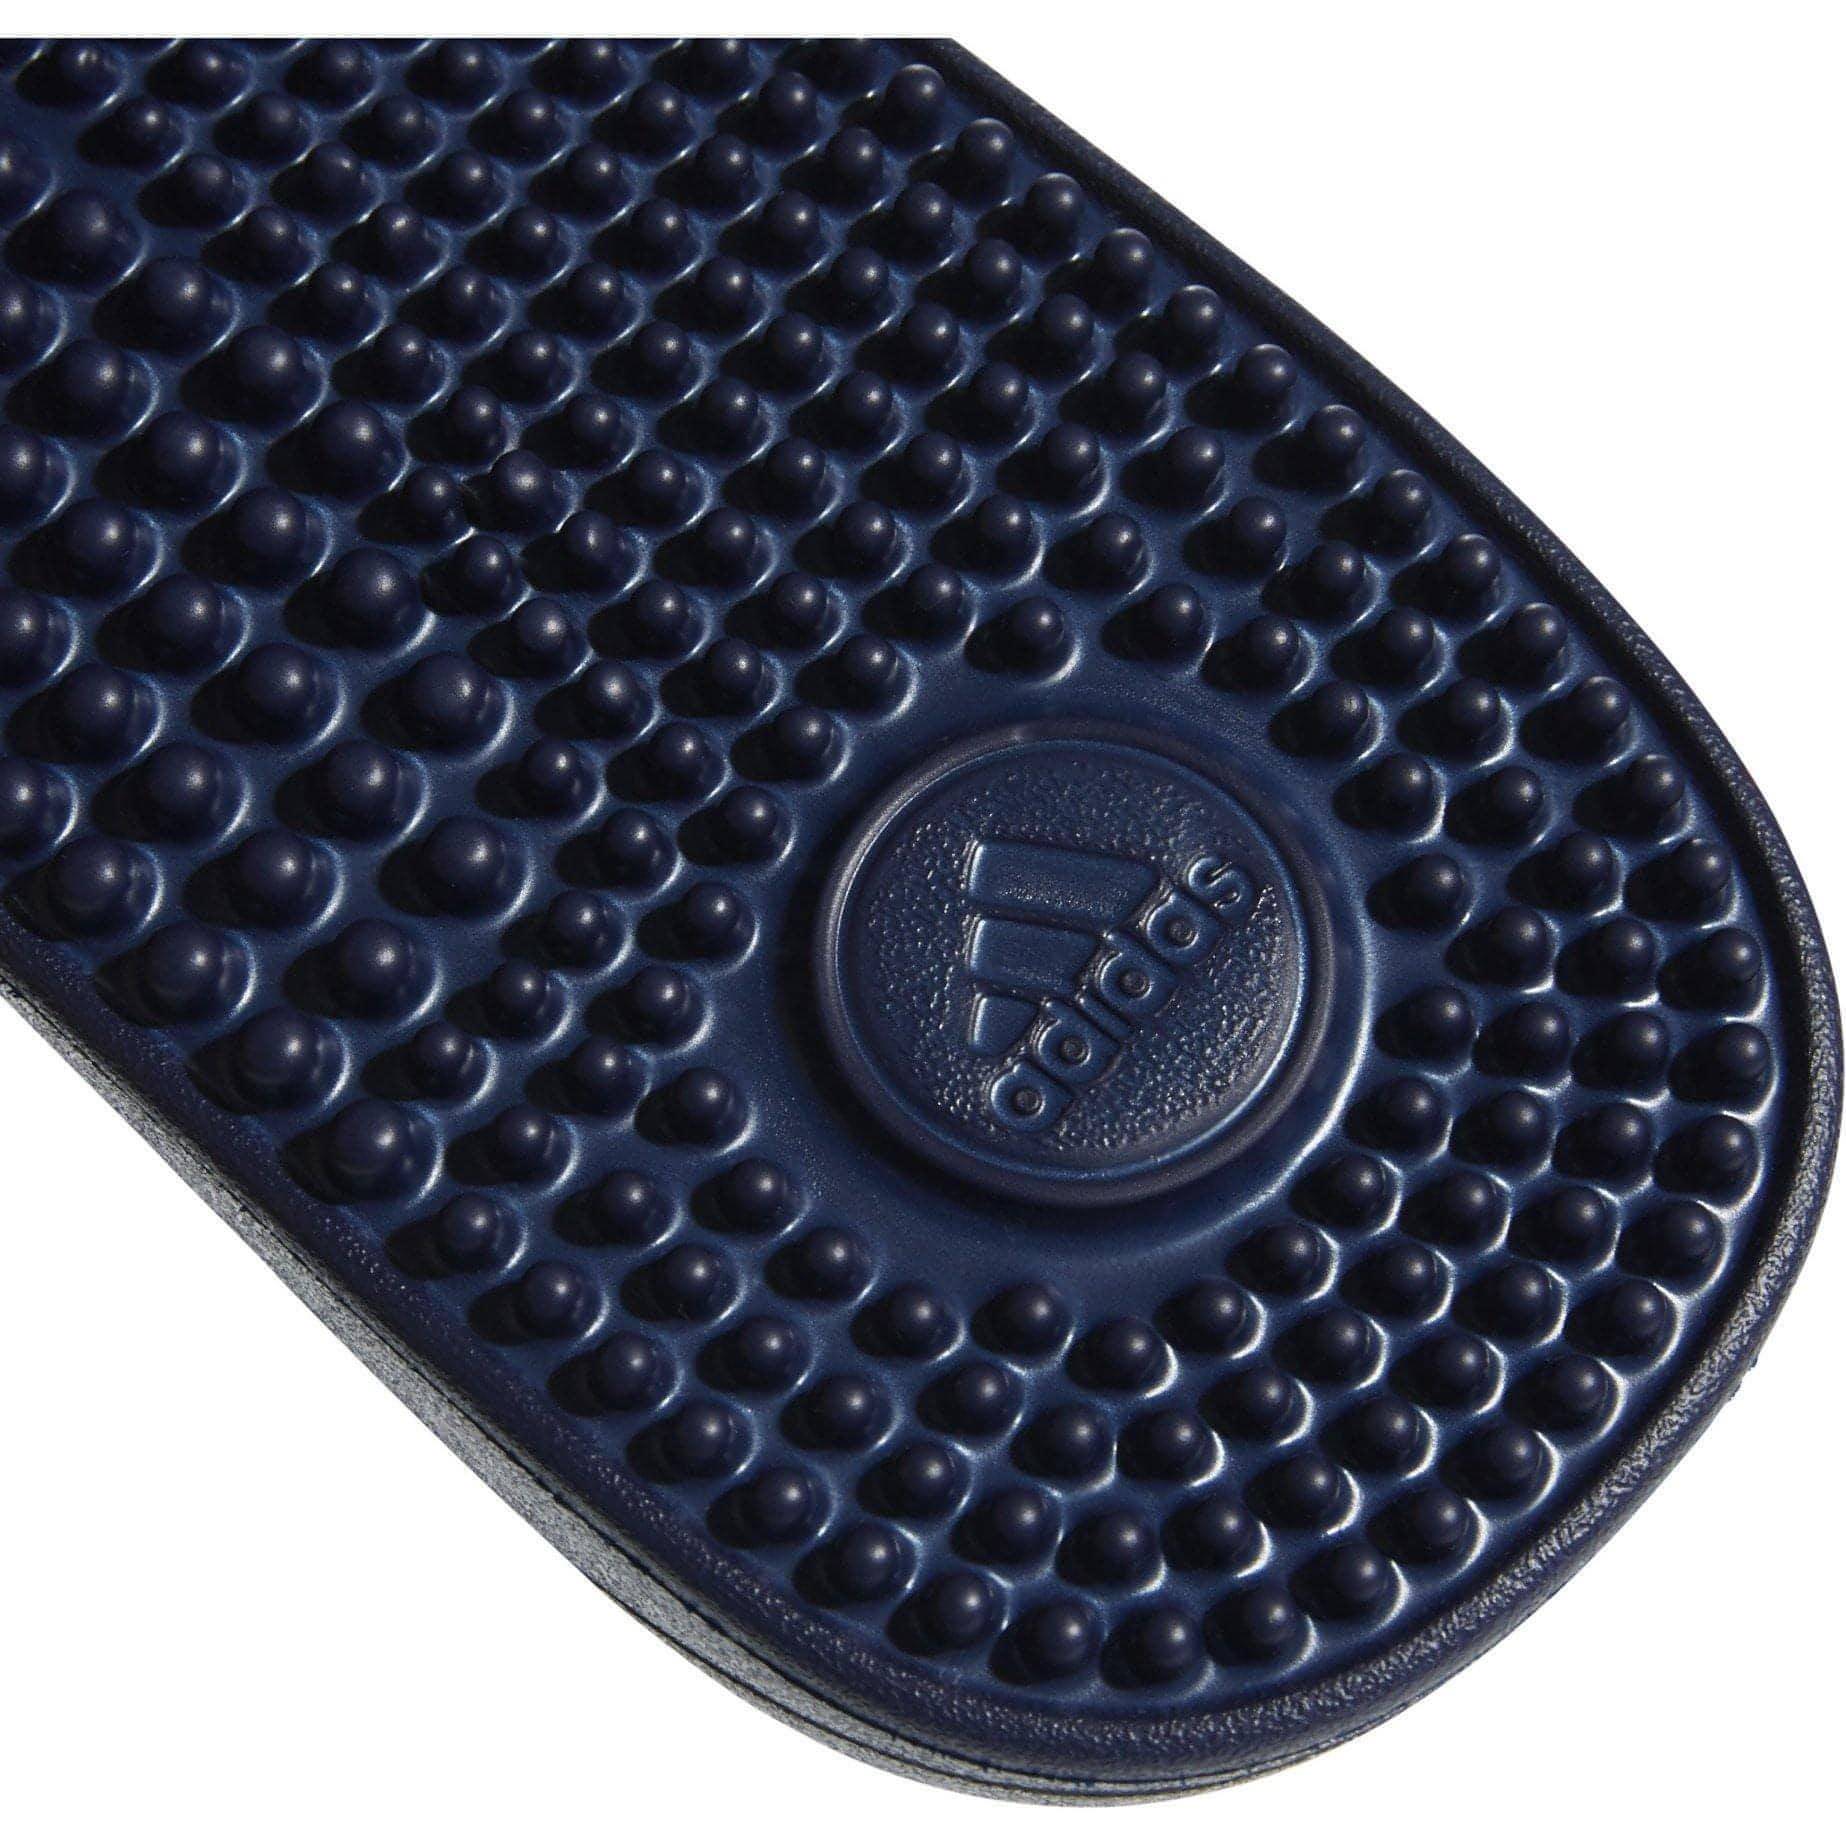 adidas Adissage Sliders - Blue - Start Fitness